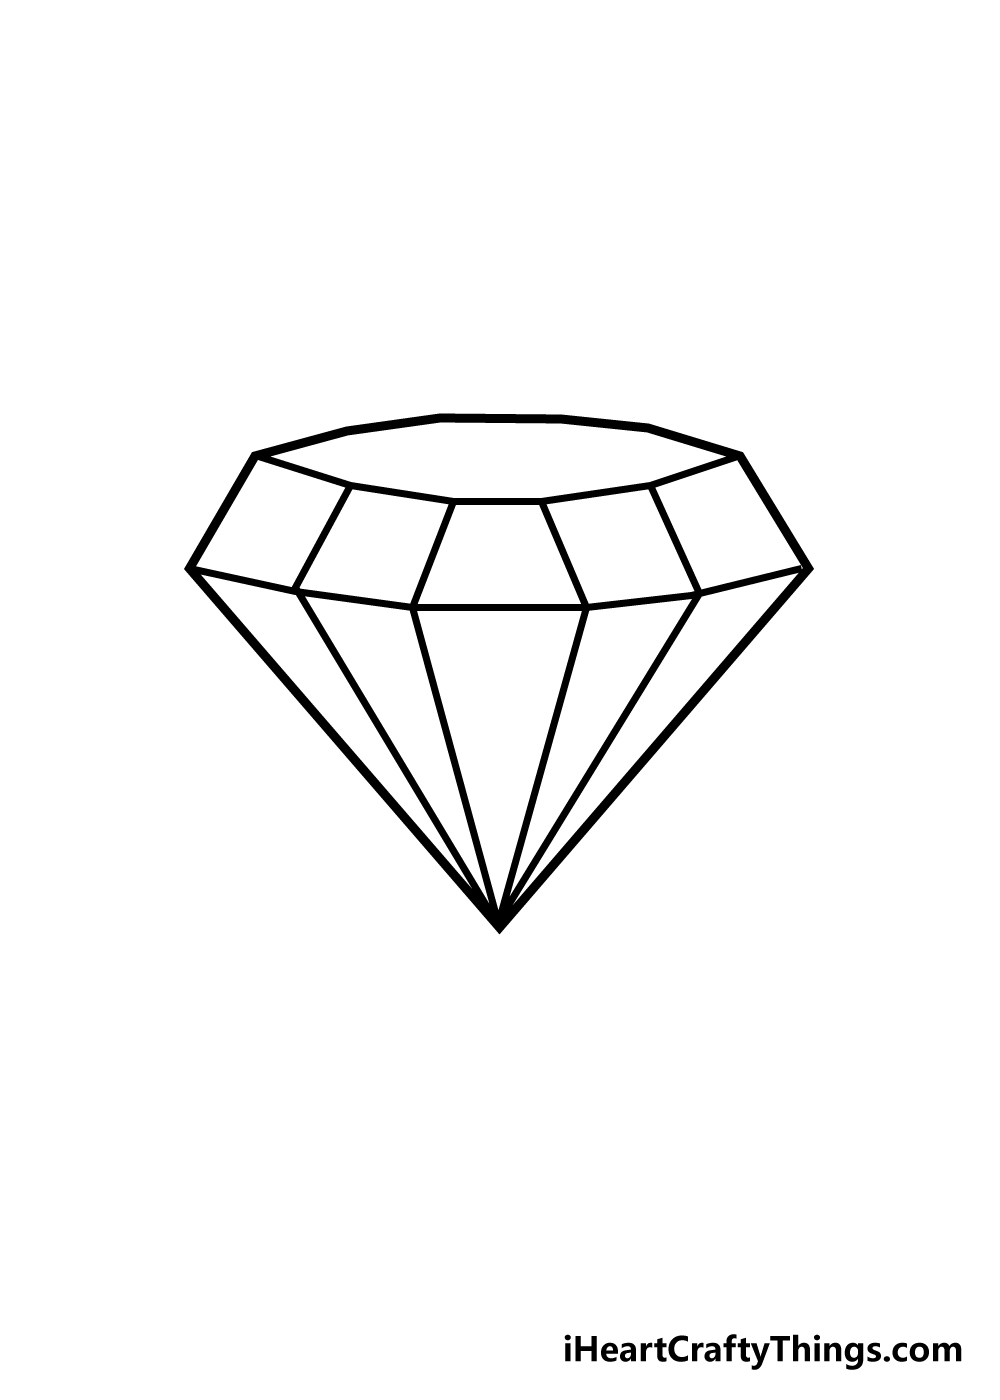 draw diamond step 5